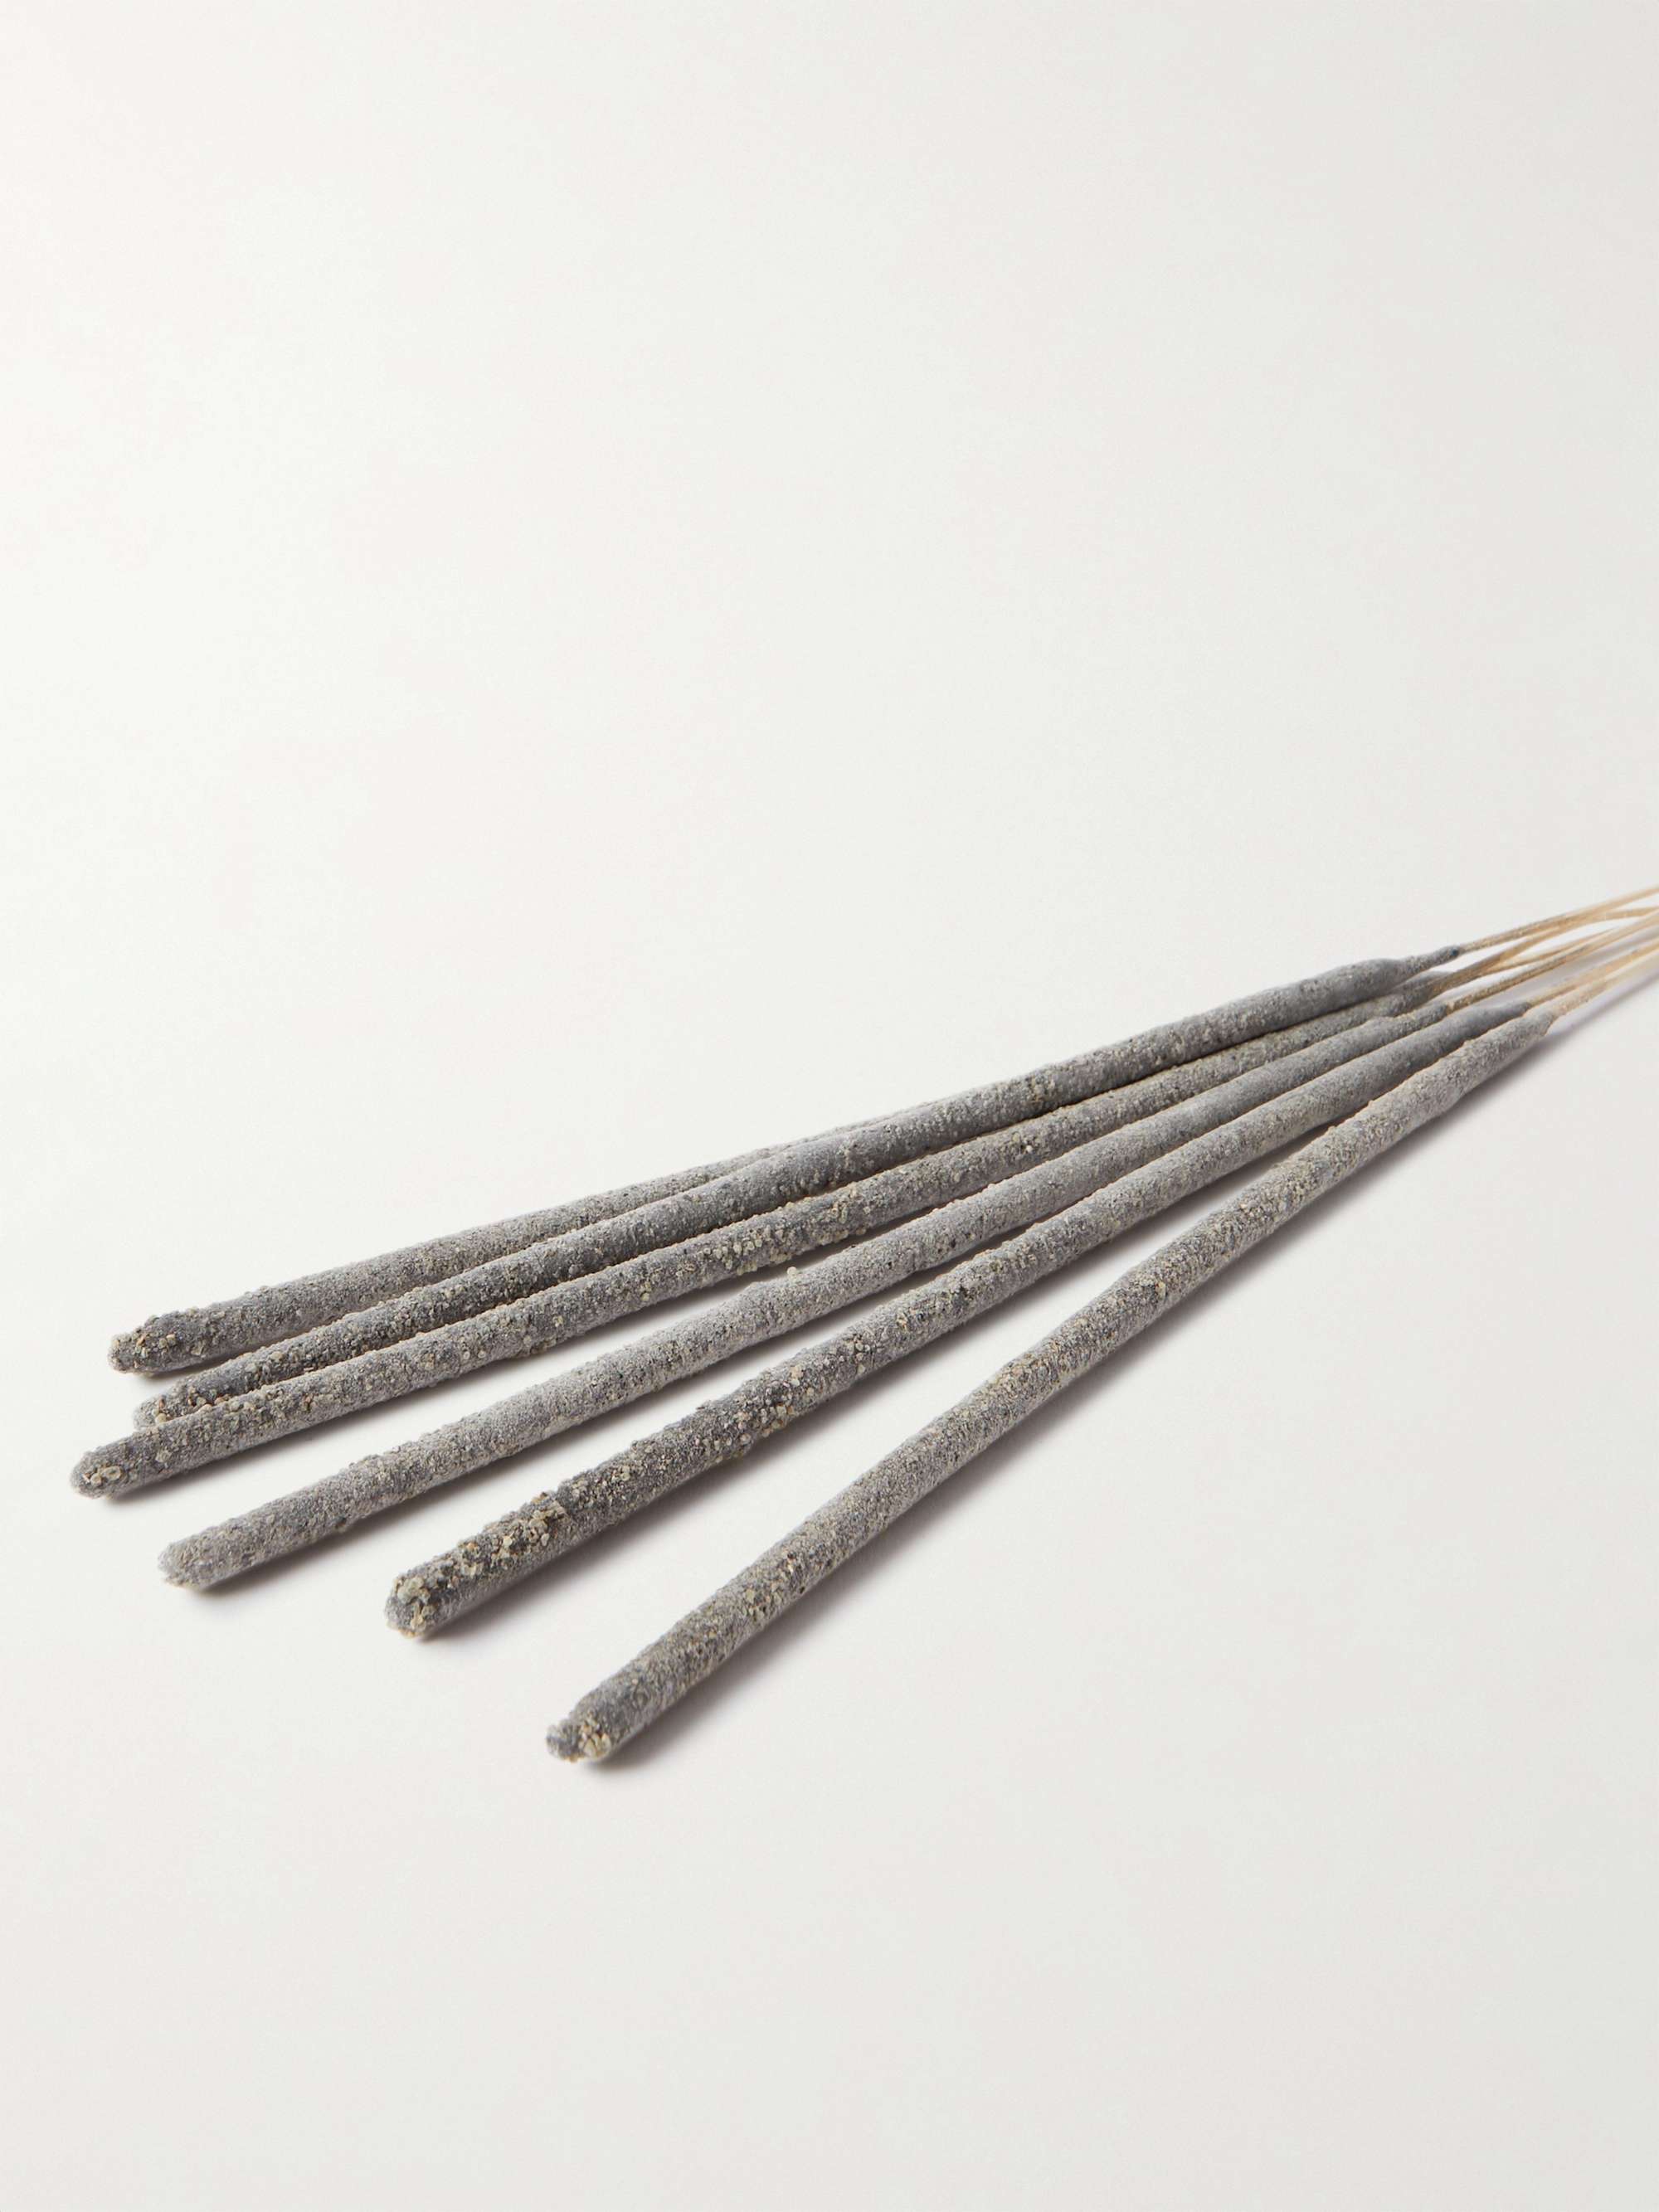 SATTA Mexican Copal Incense Sticks